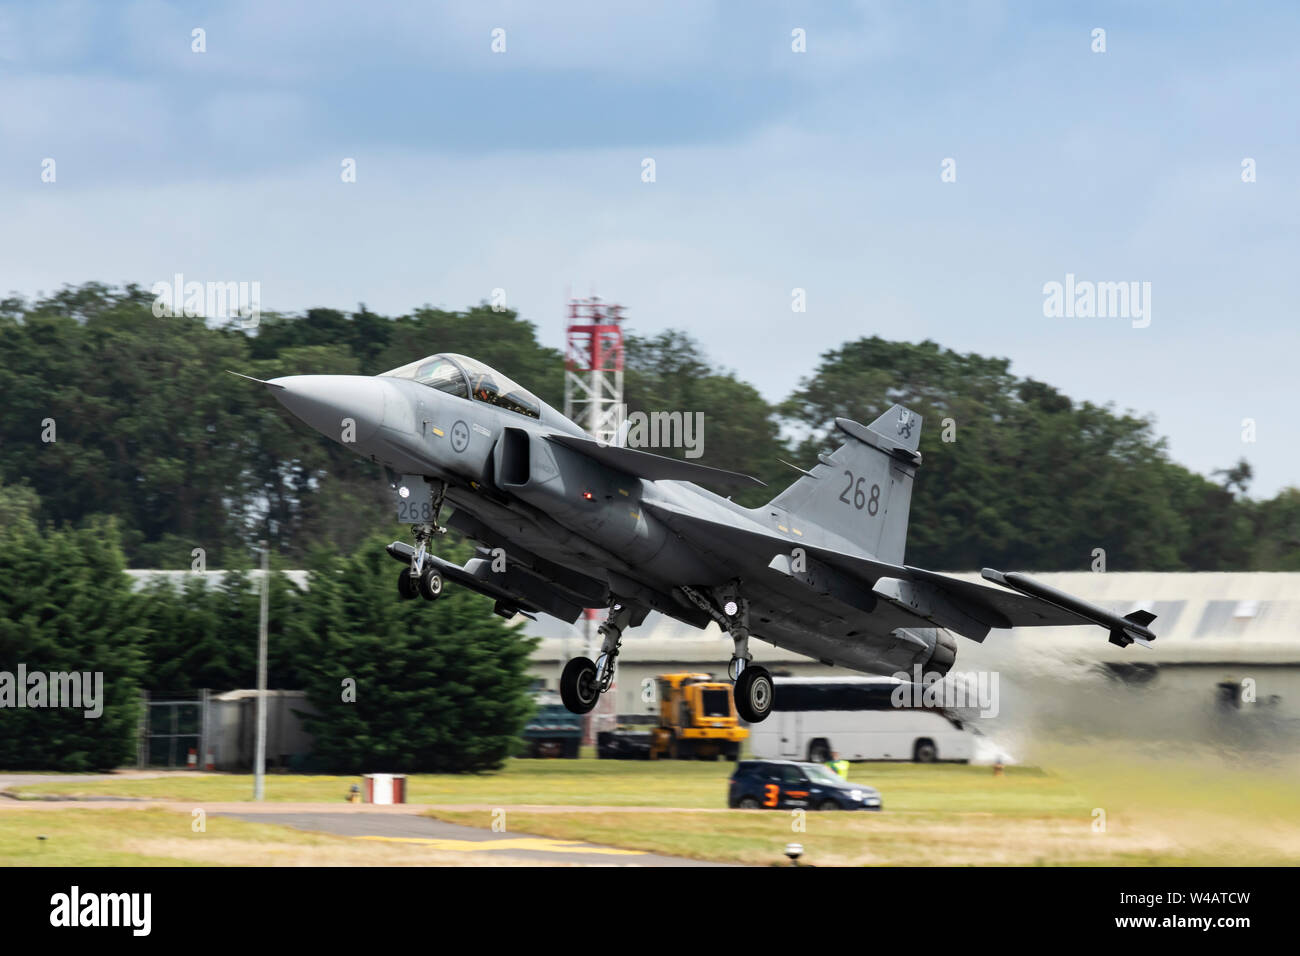 Armée de l'air suédoise Saab Gripen battant le 20 juillet 2019 à RIAT 2019, RAF Fairford, Gloucestershire, Royaume-Uni Banque D'Images